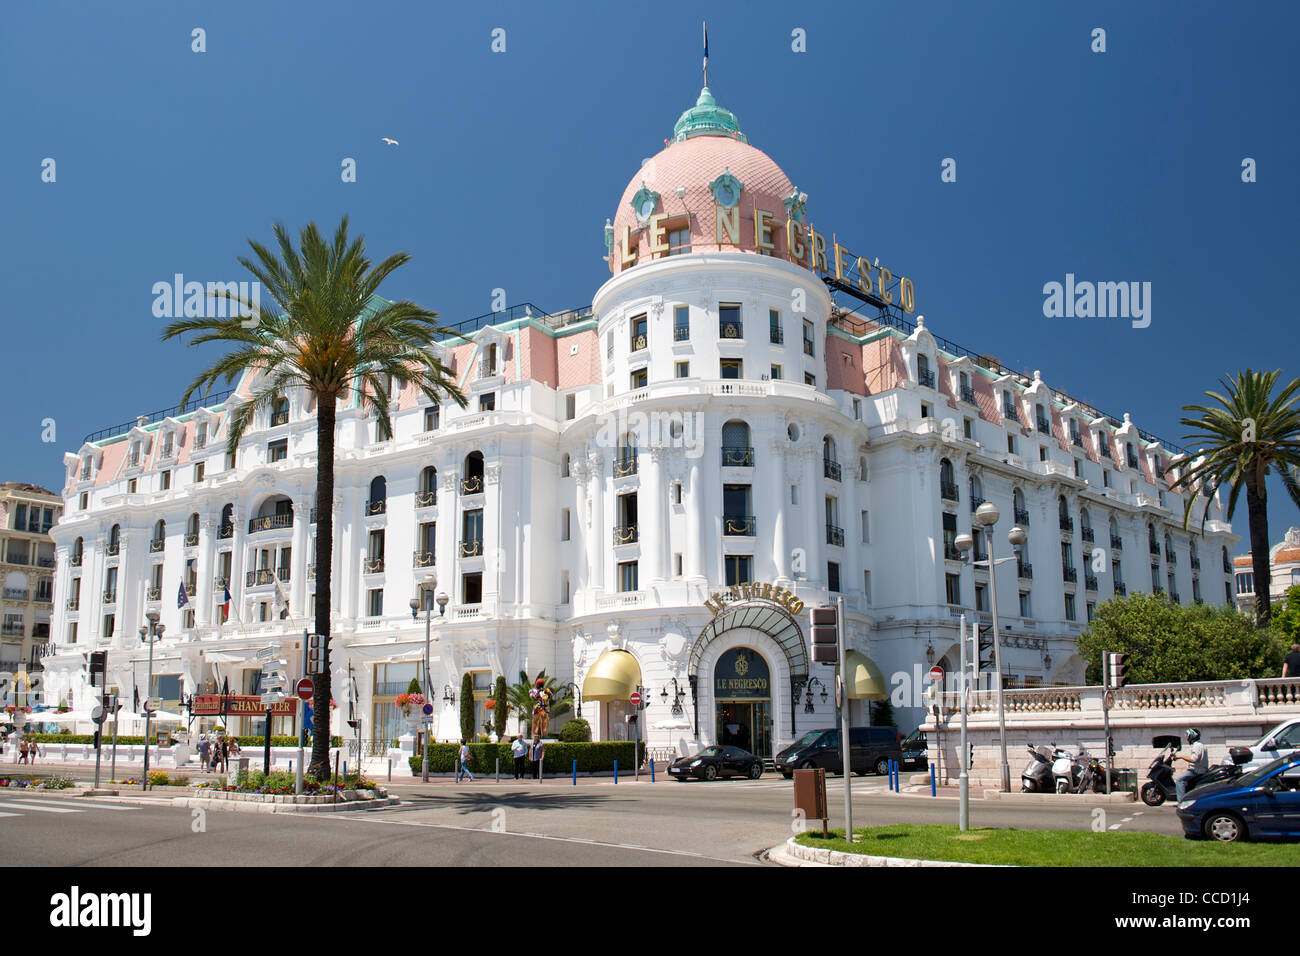 L'hotel Negresco di Nizza sulla costa mediterranea nel sud della Francia. Foto Stock